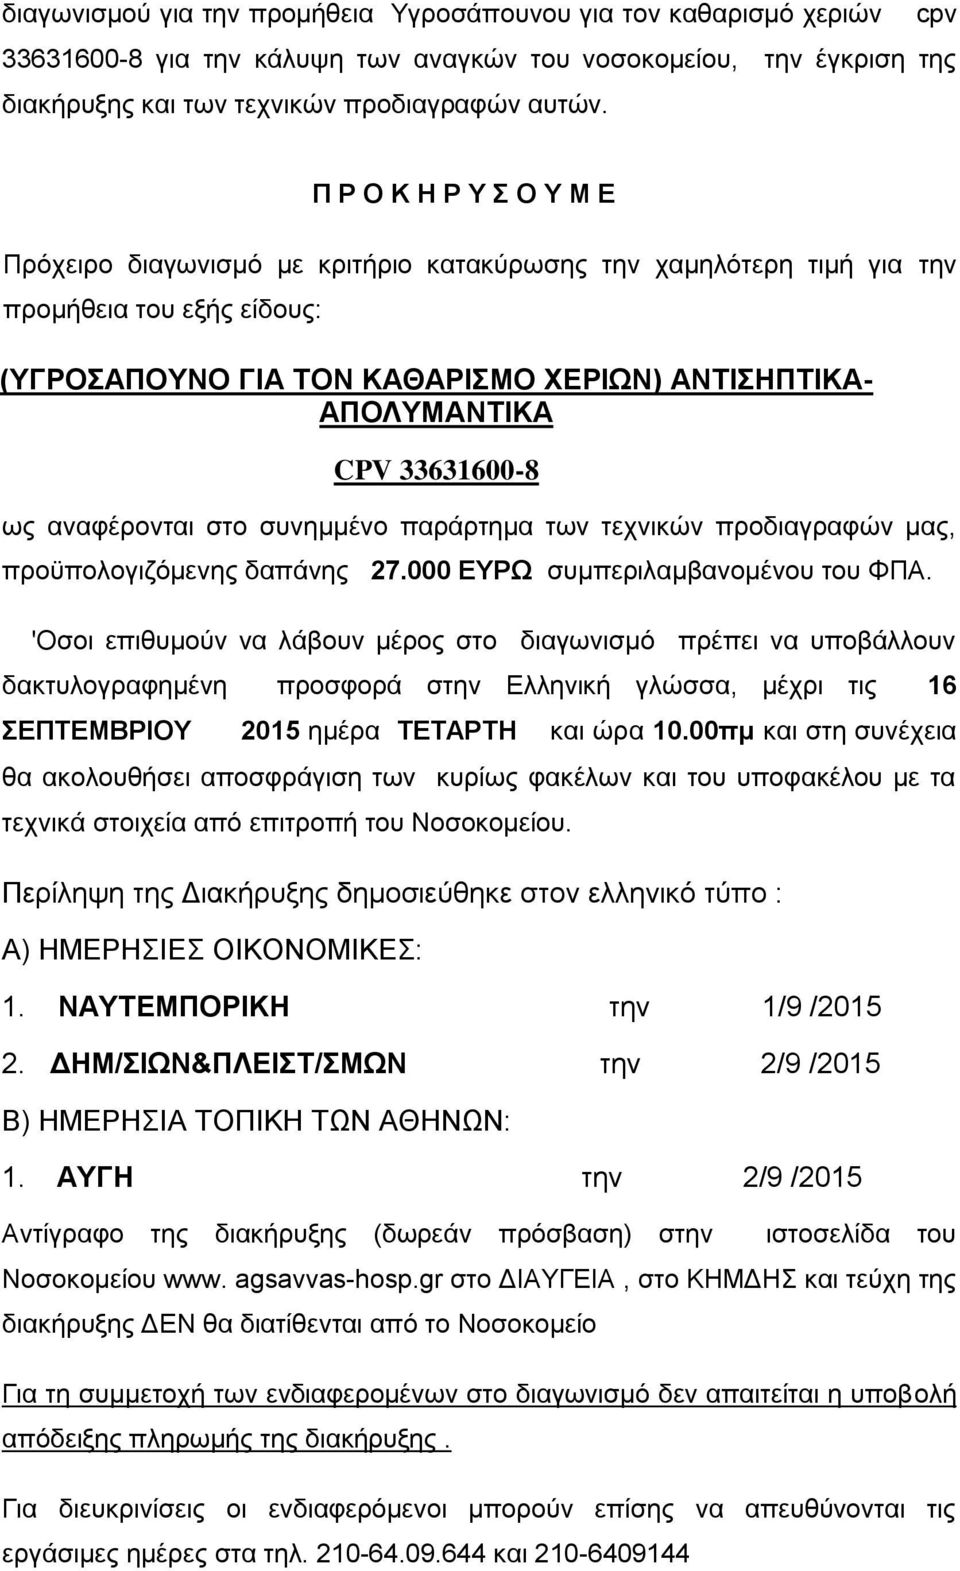 33631600-8 ως αναφέρονται στο συνημμένο παράρτημα των τεχνικών προδιαγραφών μας, προϋπολογιζόμενης δαπάνης 27.000 EYΡΩ συμπεριλαμβανομένου του ΦΠΑ.